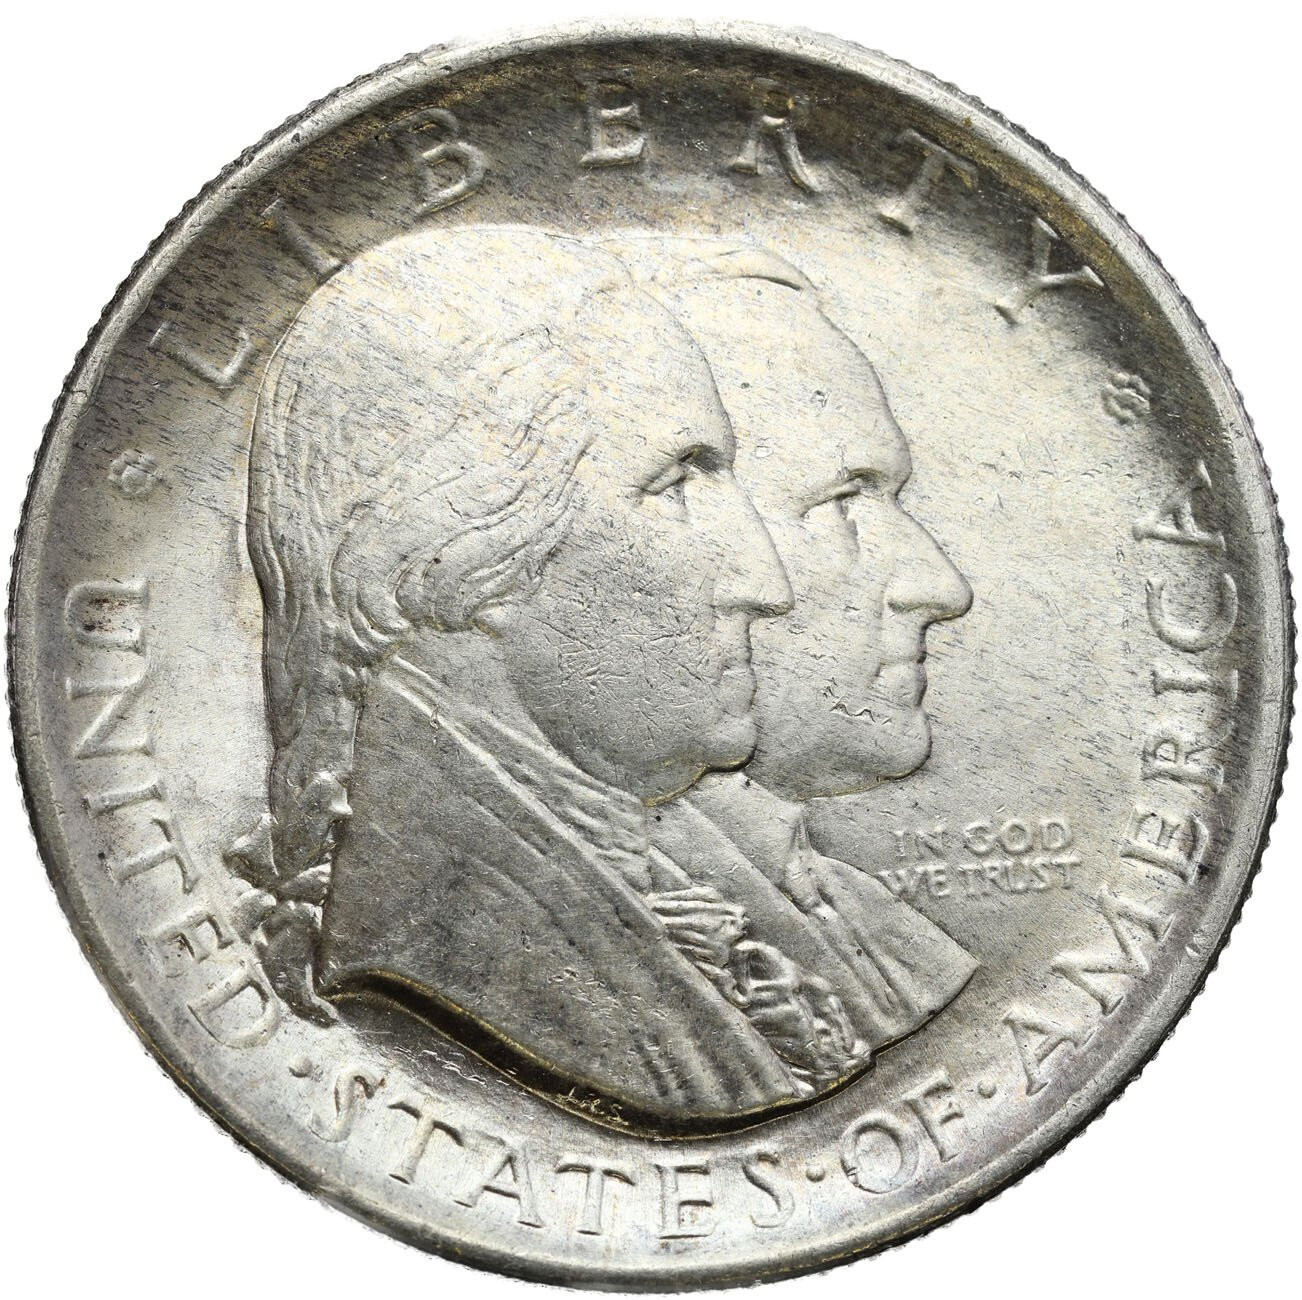 USA. 1/2 dolara (50 centów) 1926 - deklaracja Niepodległości, Filadelfia